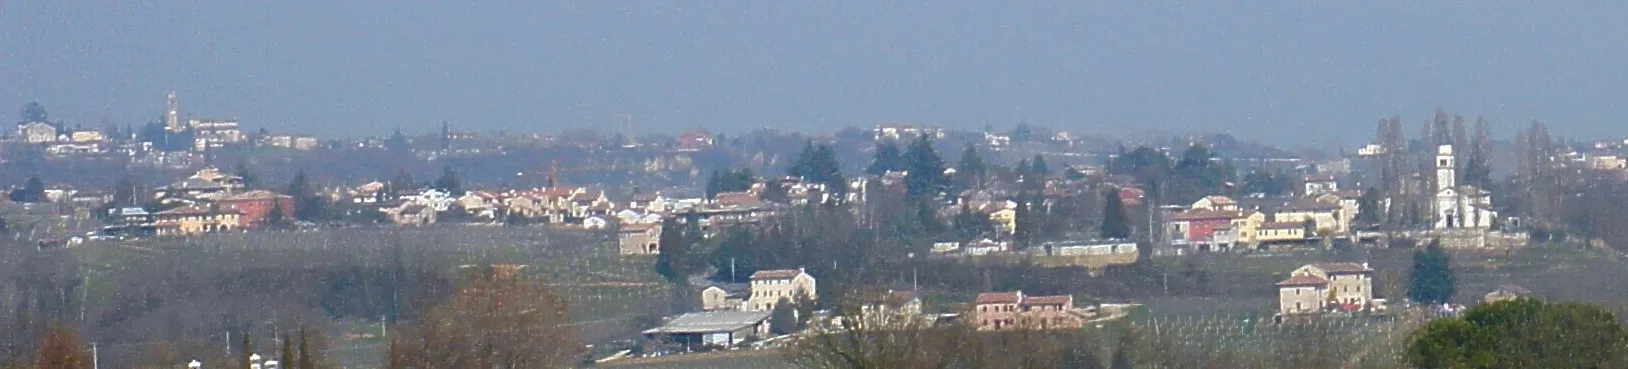 Bilde av Veneto